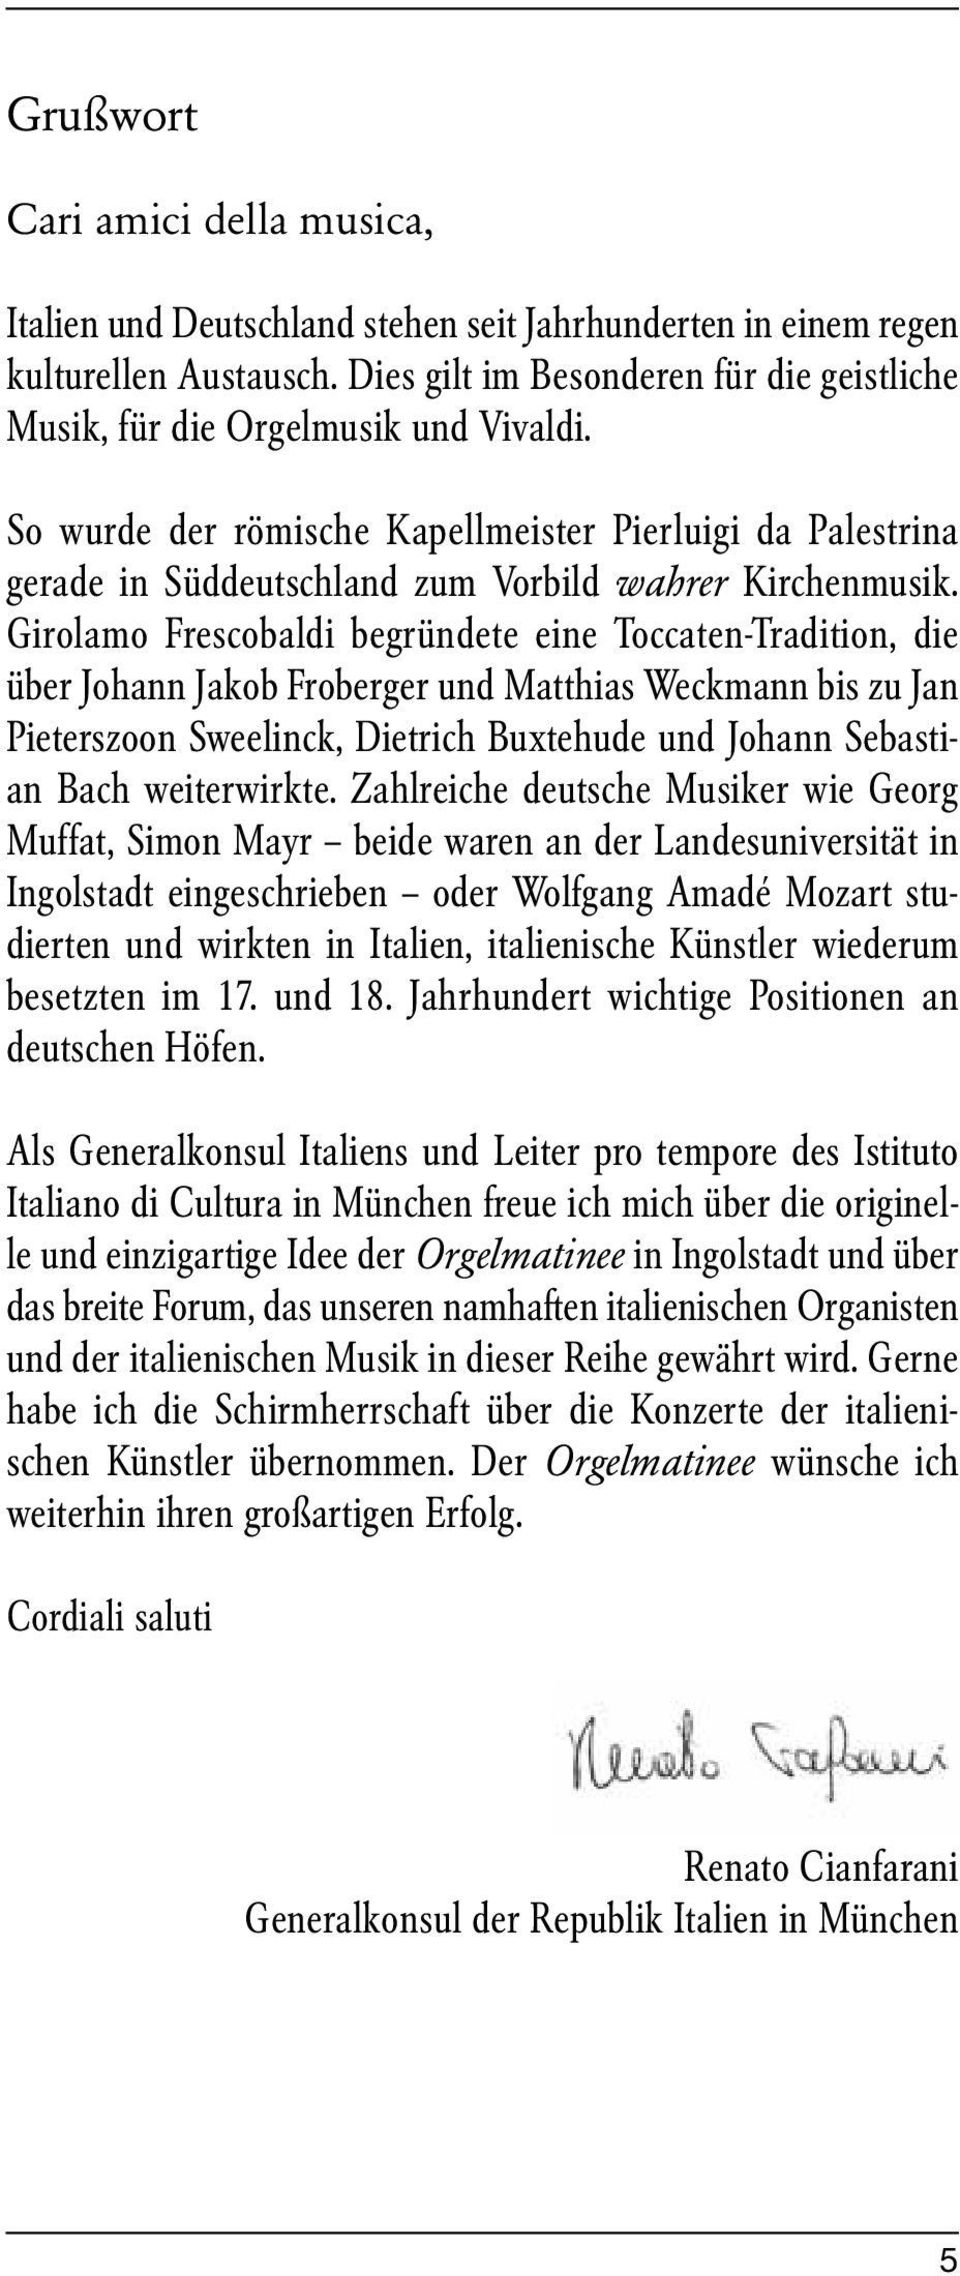 Girolamo Frescobaldi begründete eine Toccaten-Tradition, die über Johann Jakob Froberger und Matthias Weckmann bis zu Jan Pieterszoon Sweelinck, Dietrich Buxtehude und Johann Sebastian Bach